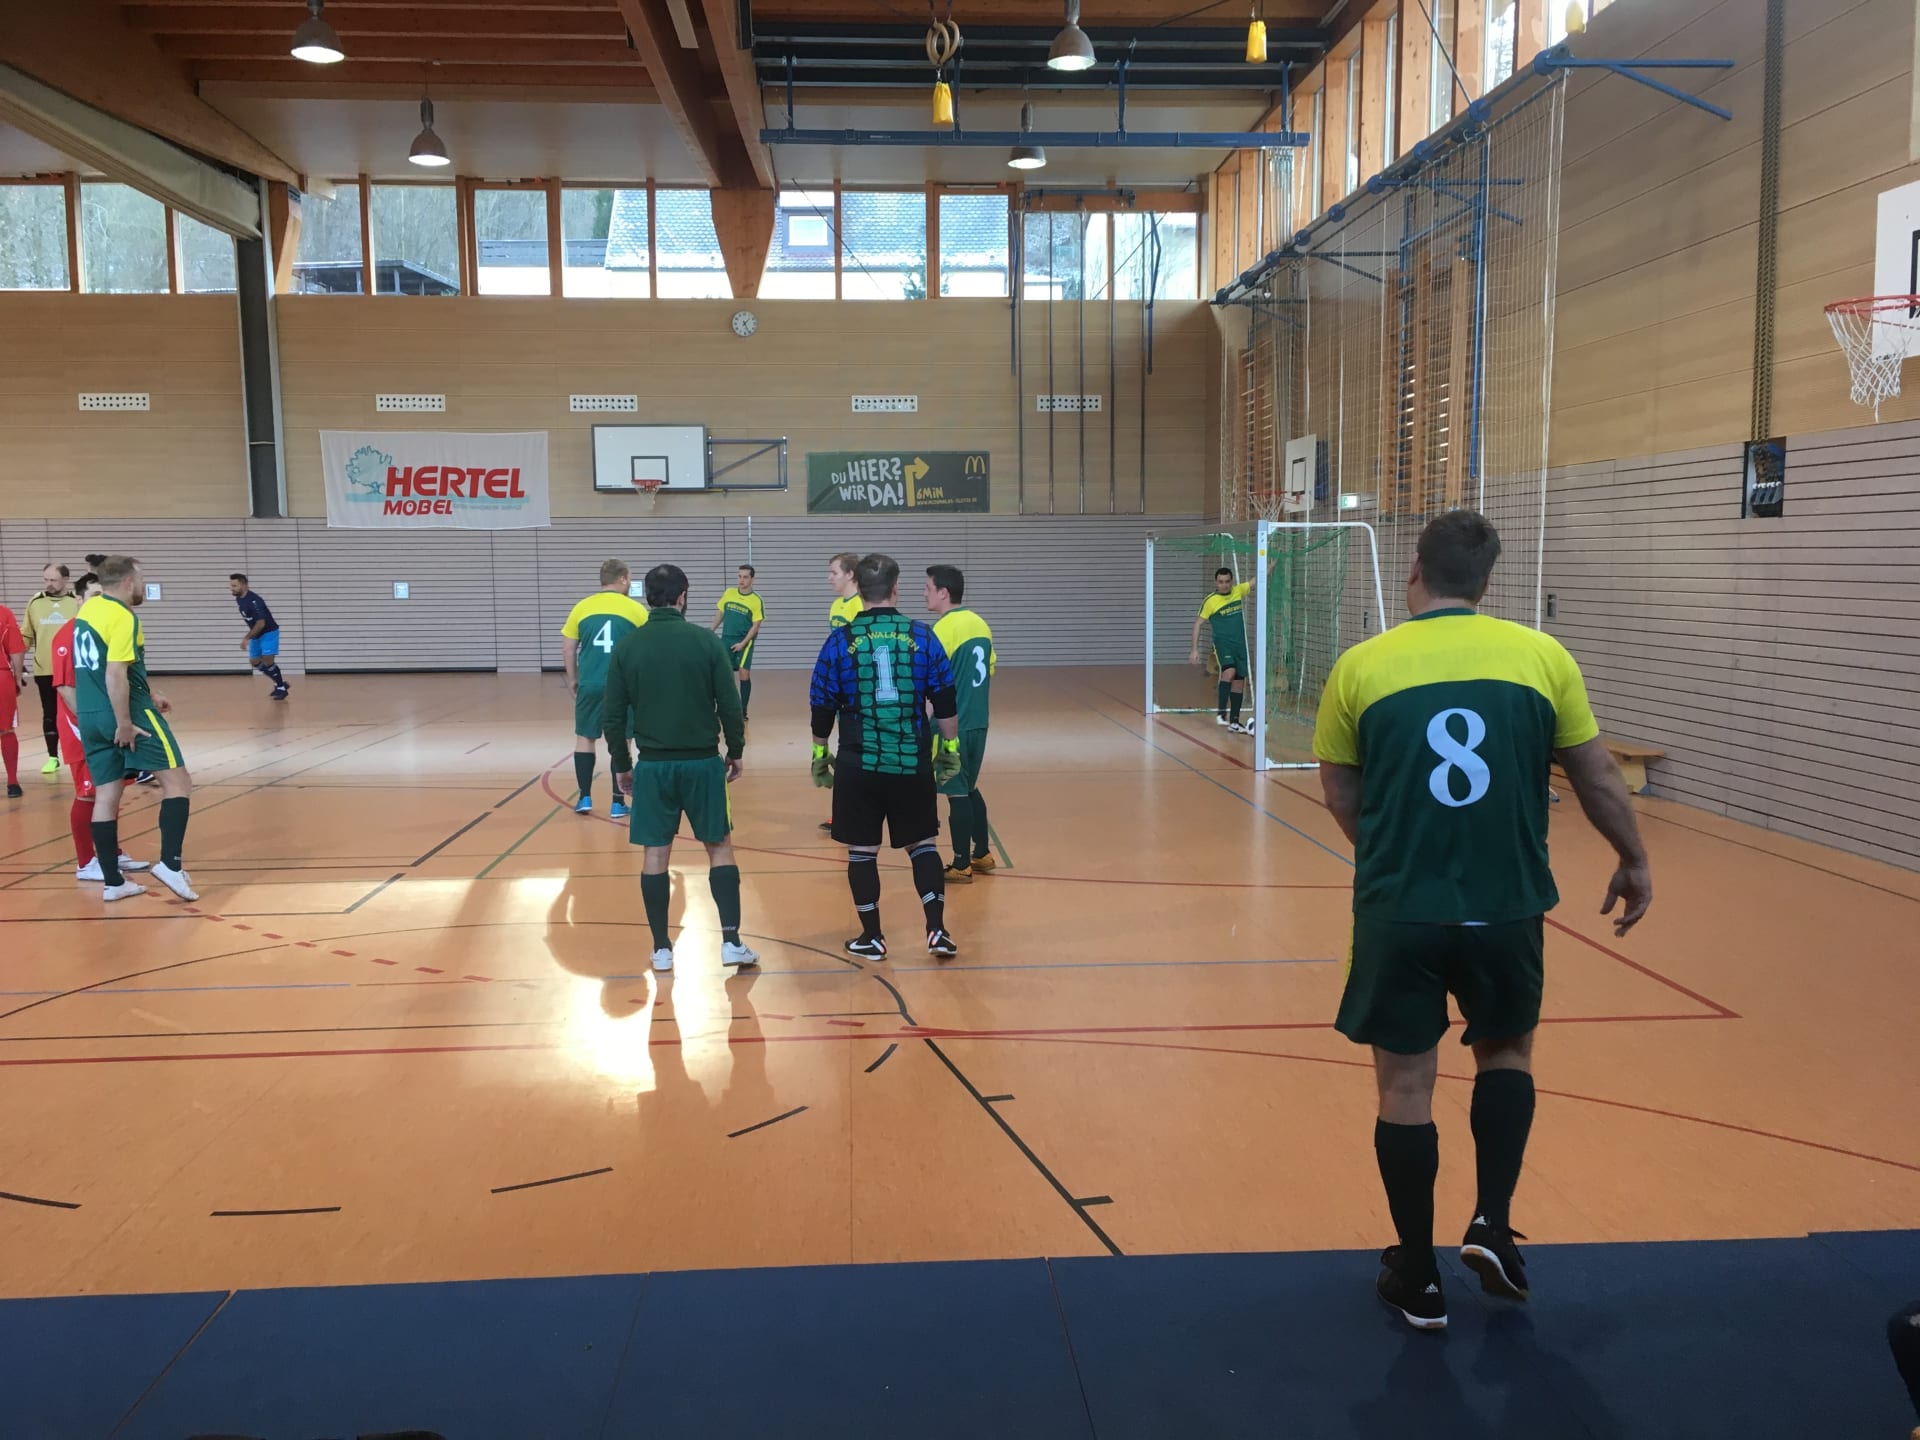 Bild aus einer Sporthalle vom Fußball Firmen-Team der Walraven GmbH. Die Spieler tragen grün-gelbe Trikots.